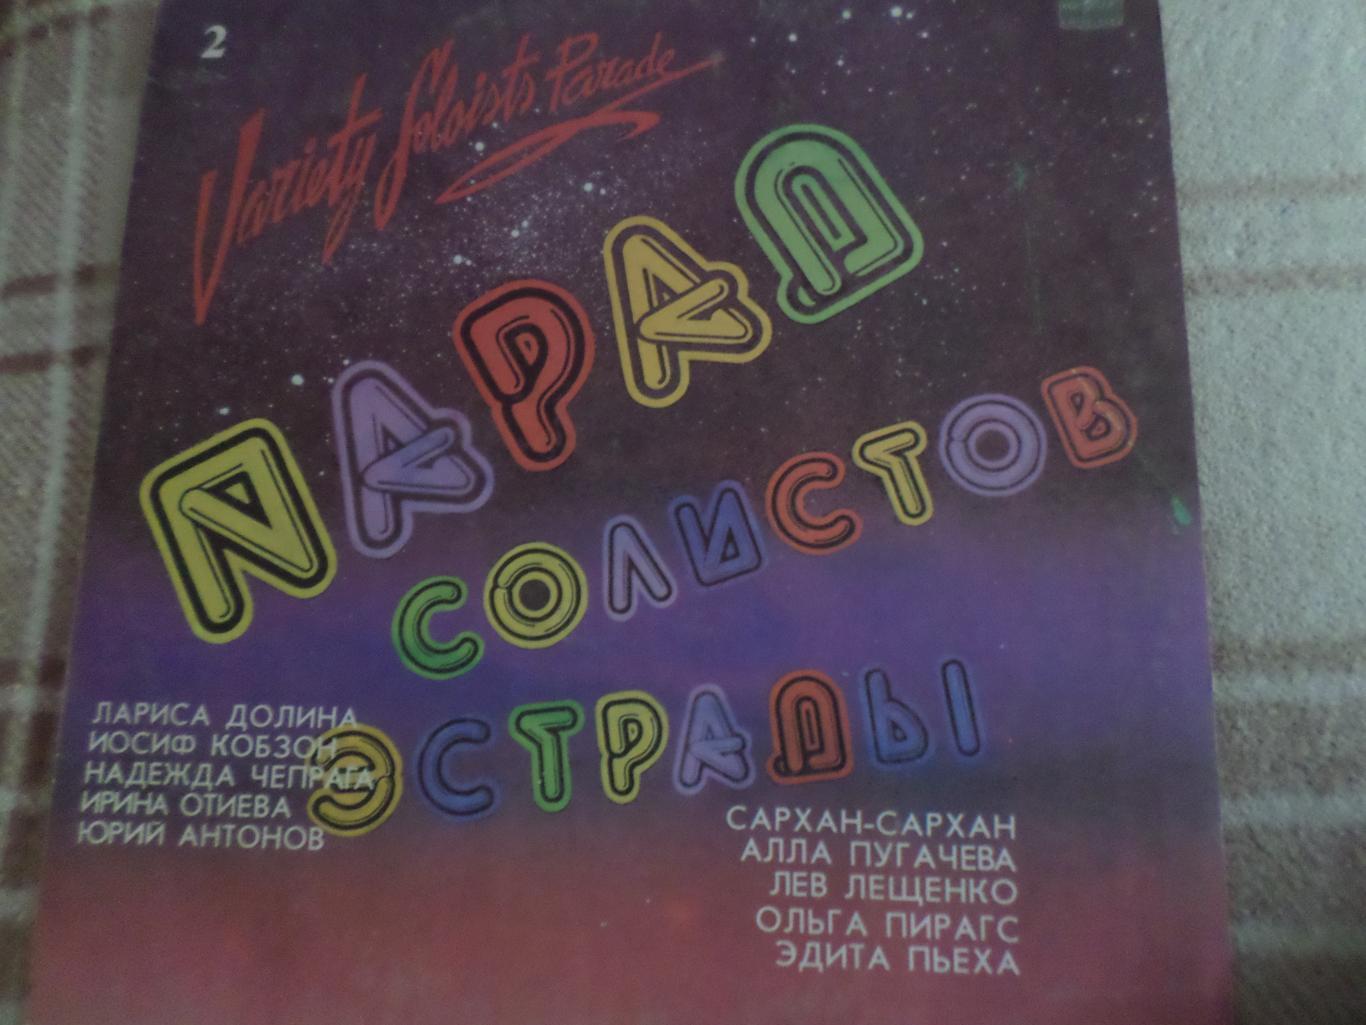 Пластинка Парад артистов СССР 1984 г